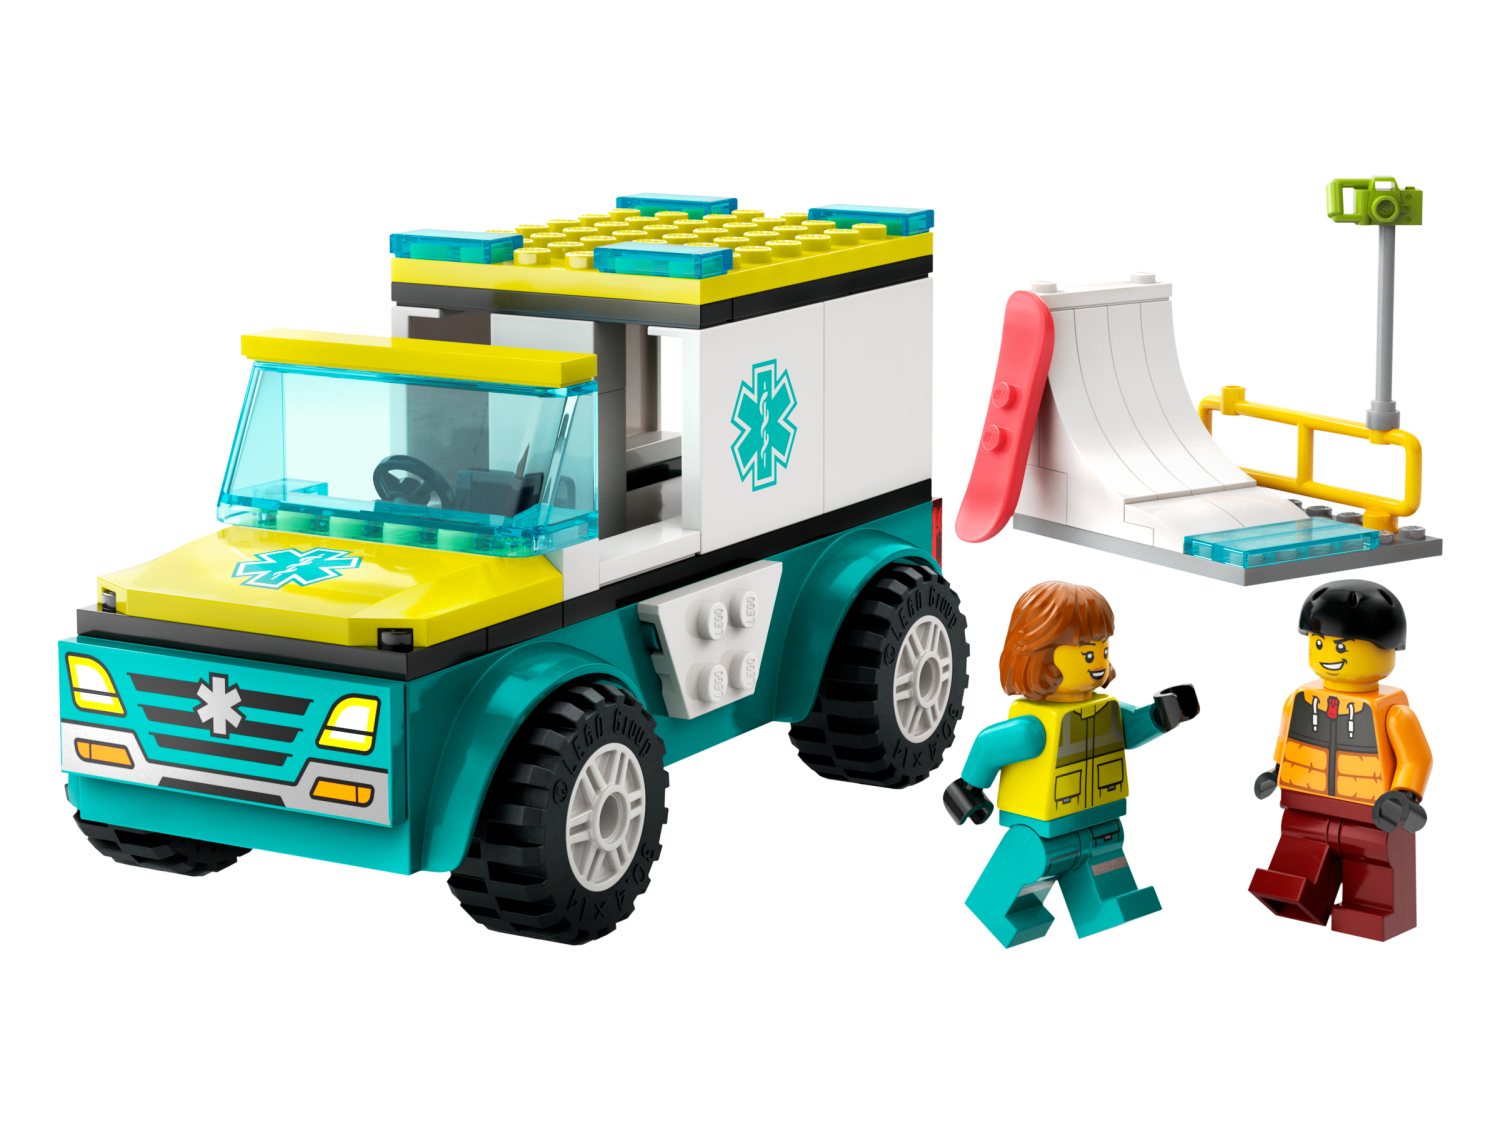 Ambulanse og snøbrettkjører